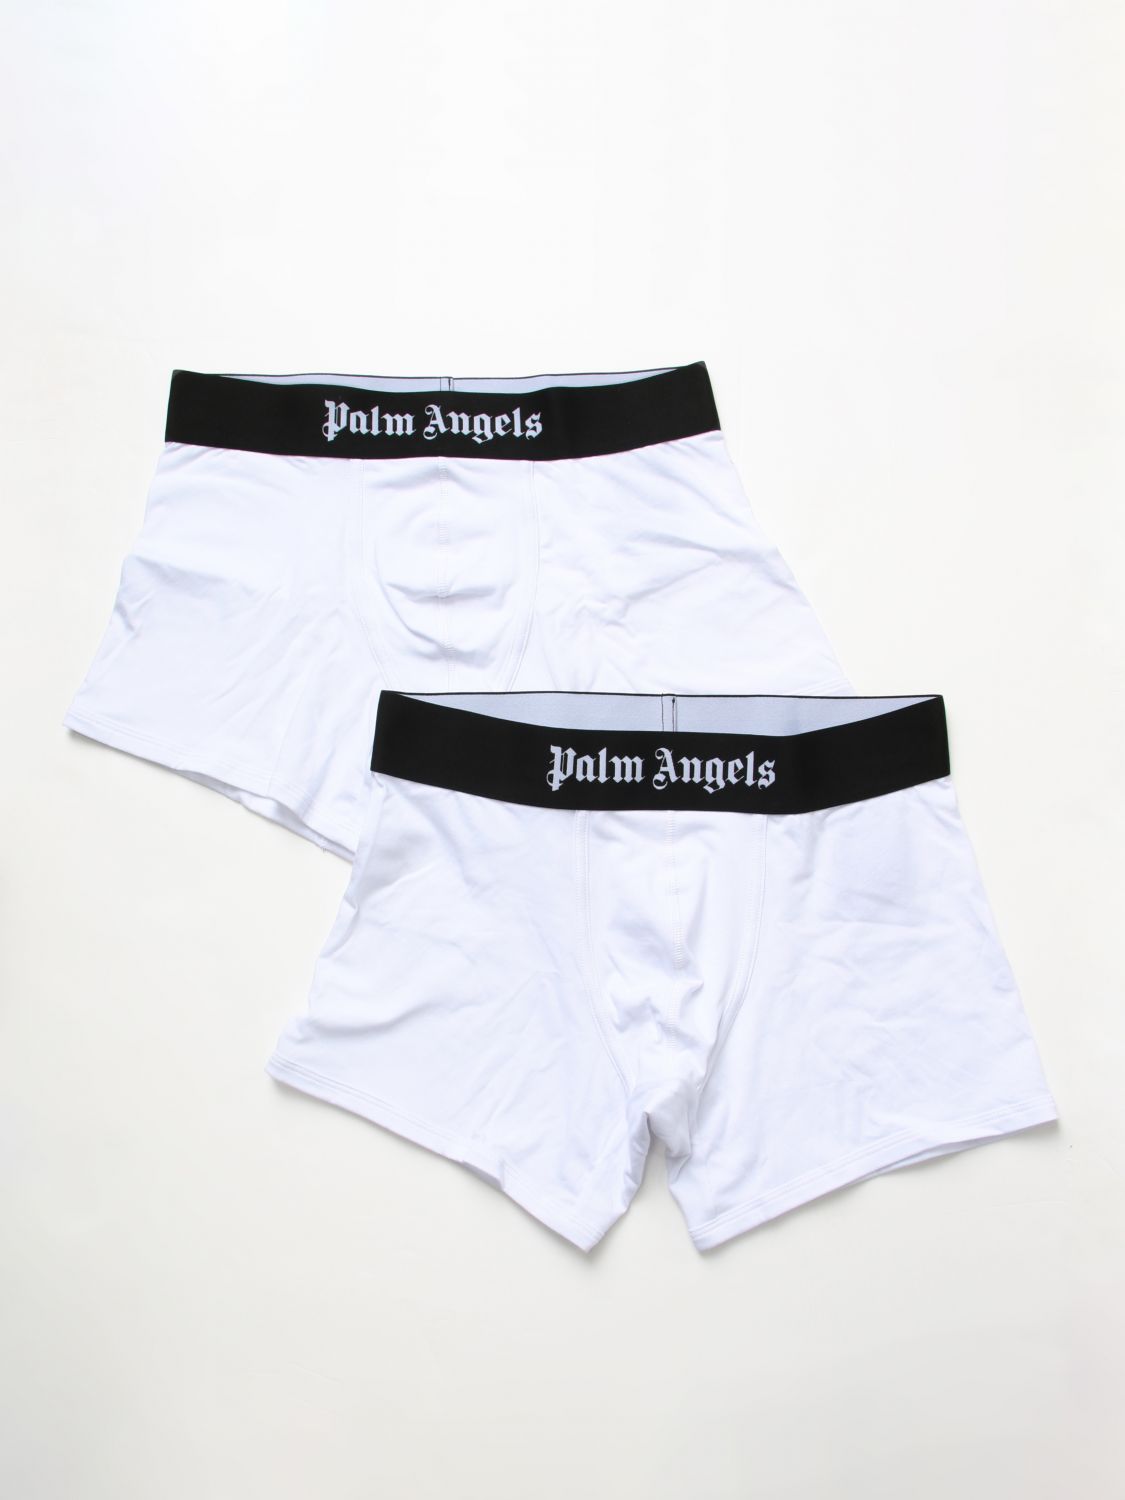 Underwear PALM ANGELS Men colour White - Size: S - male